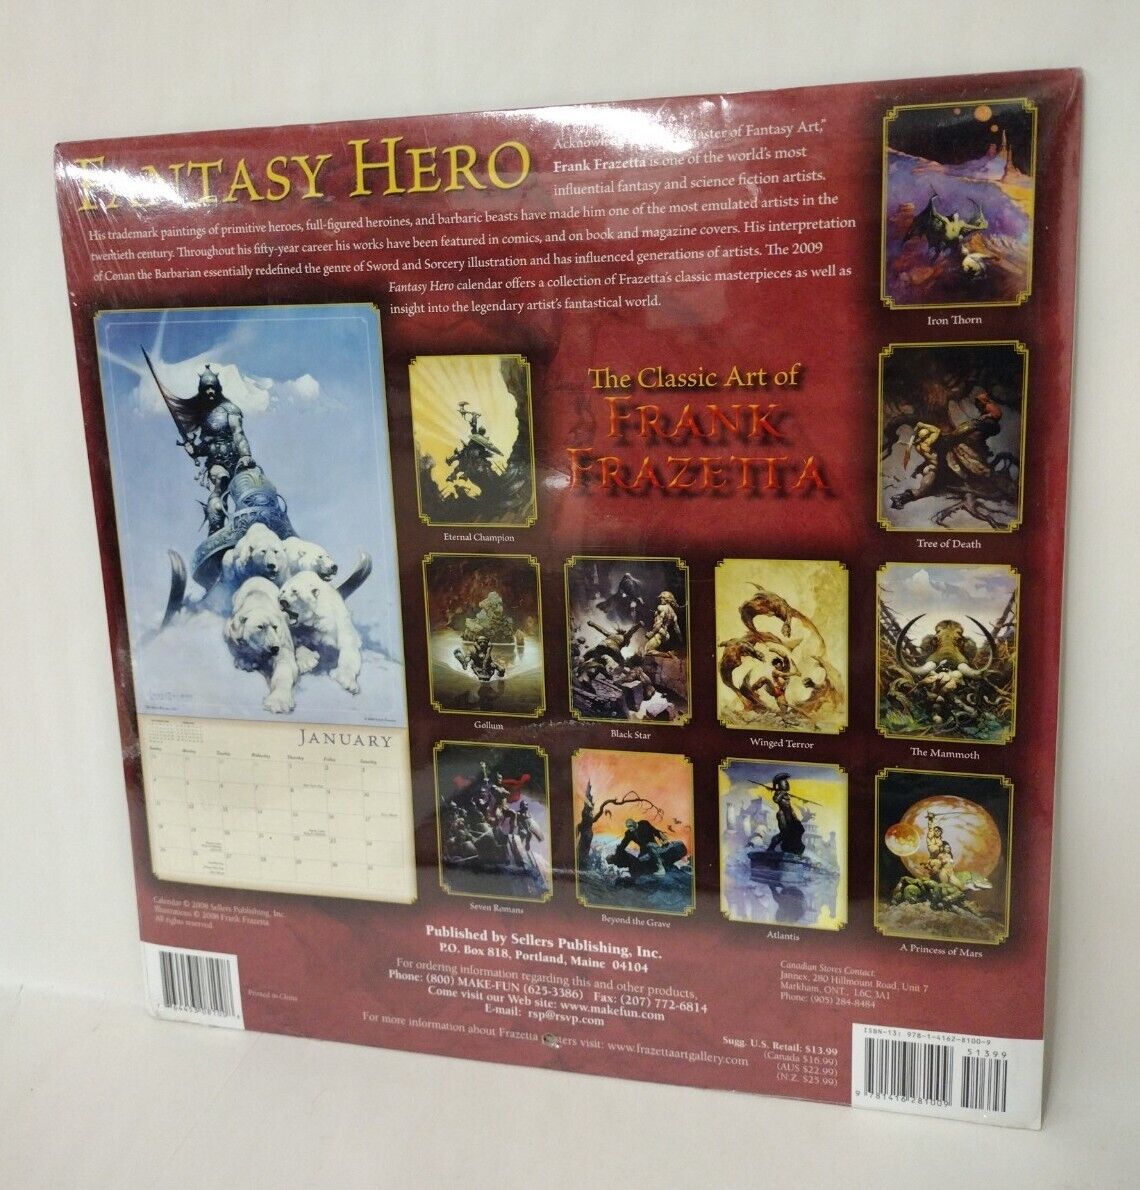 2009 Frank Frazetta Fantasy Hero Calendar New Sealed Sellers Publishing